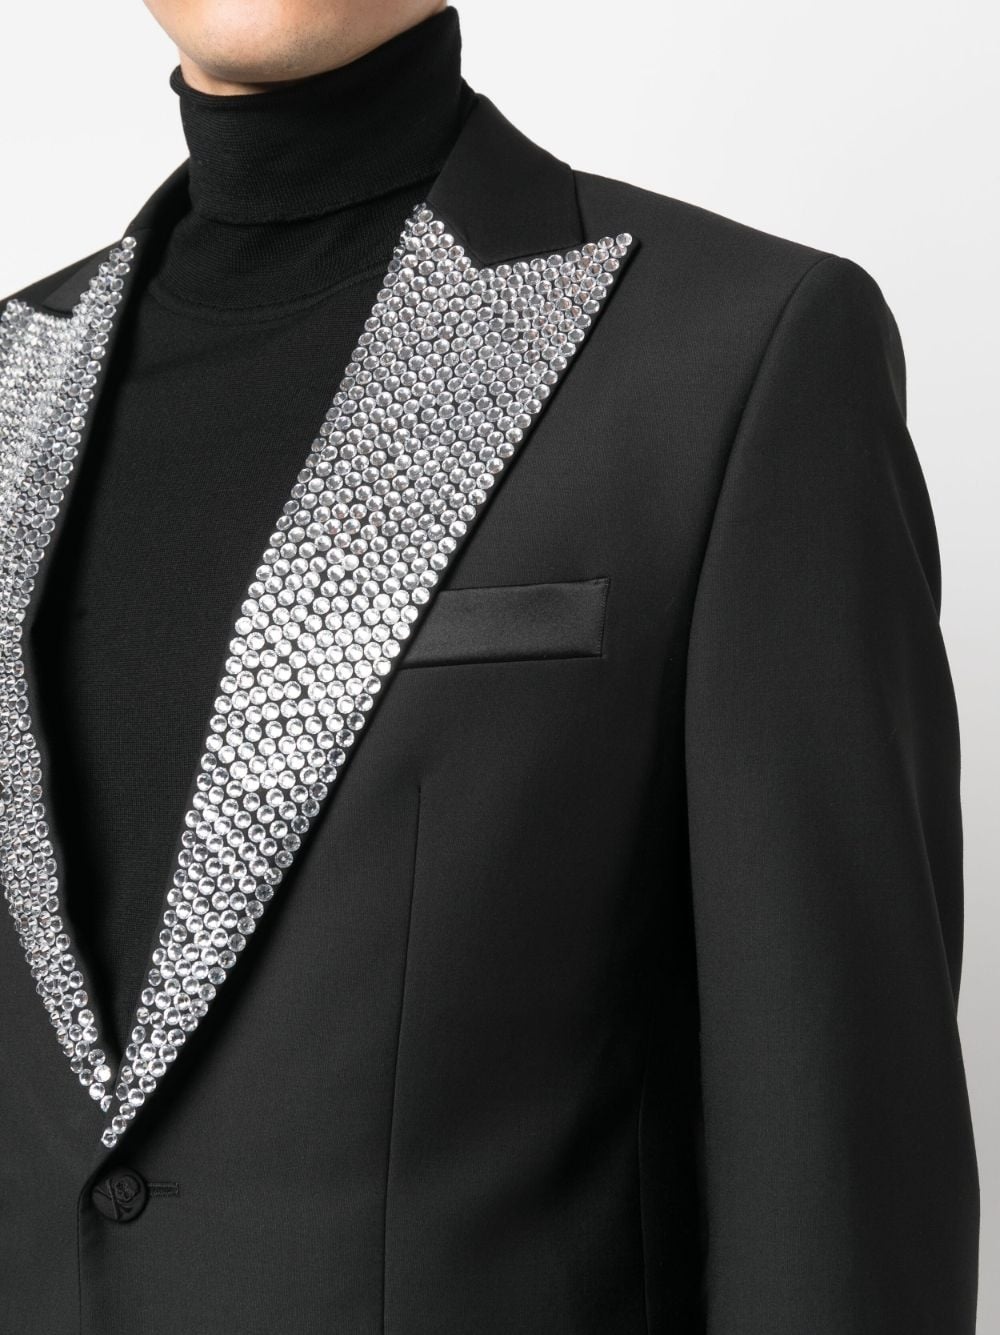 crystal-embellished dinner suit - 5